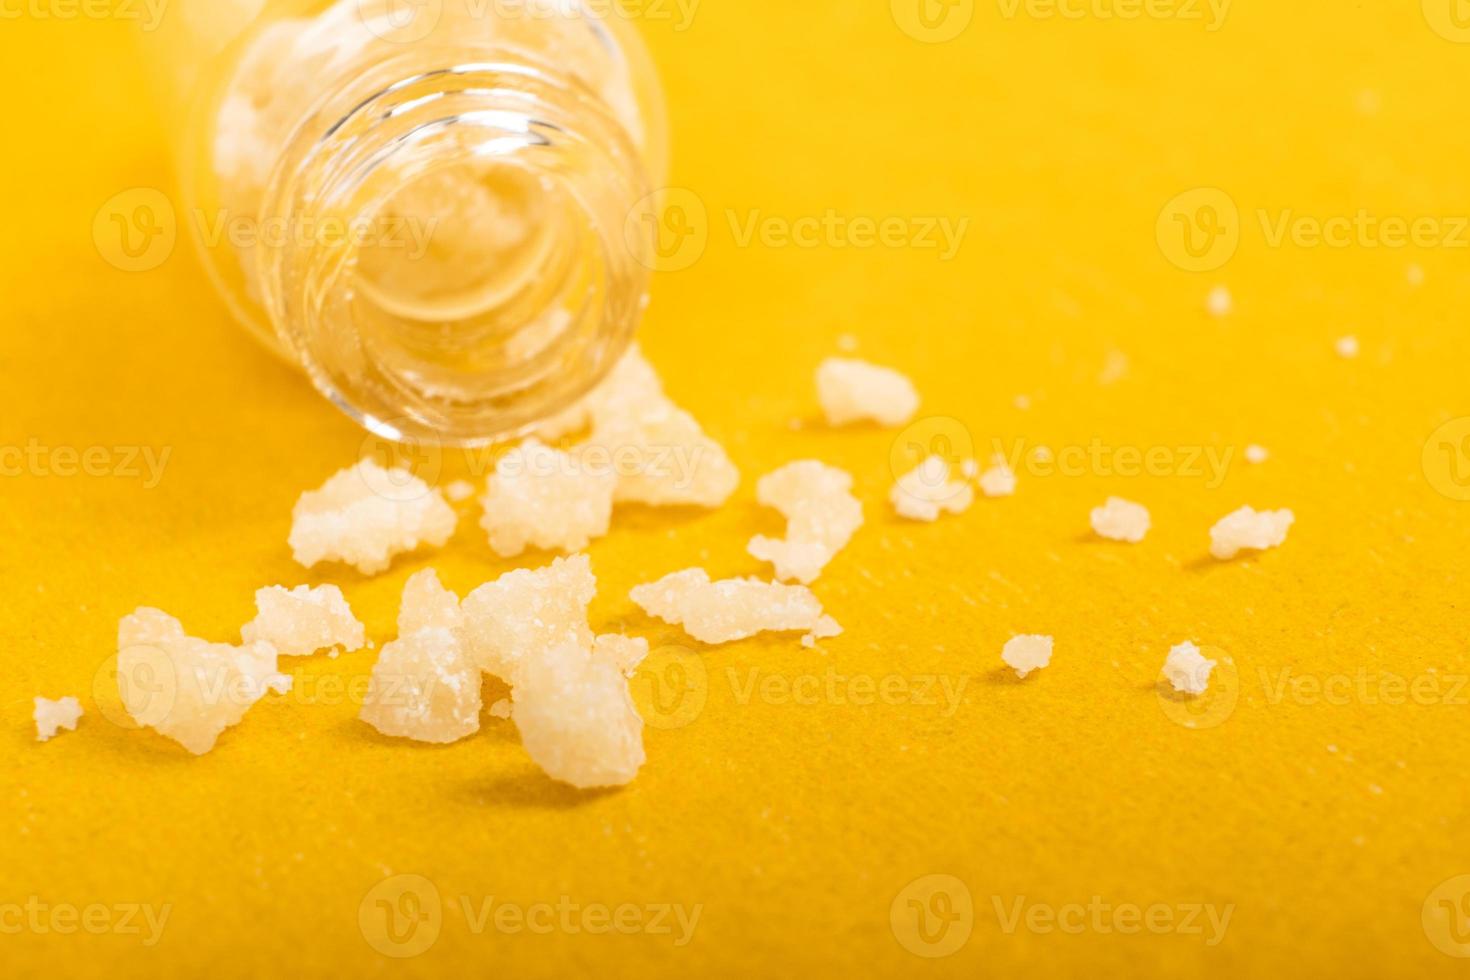 cristais de sal narcótico anfetamina em fundo amarelo foto